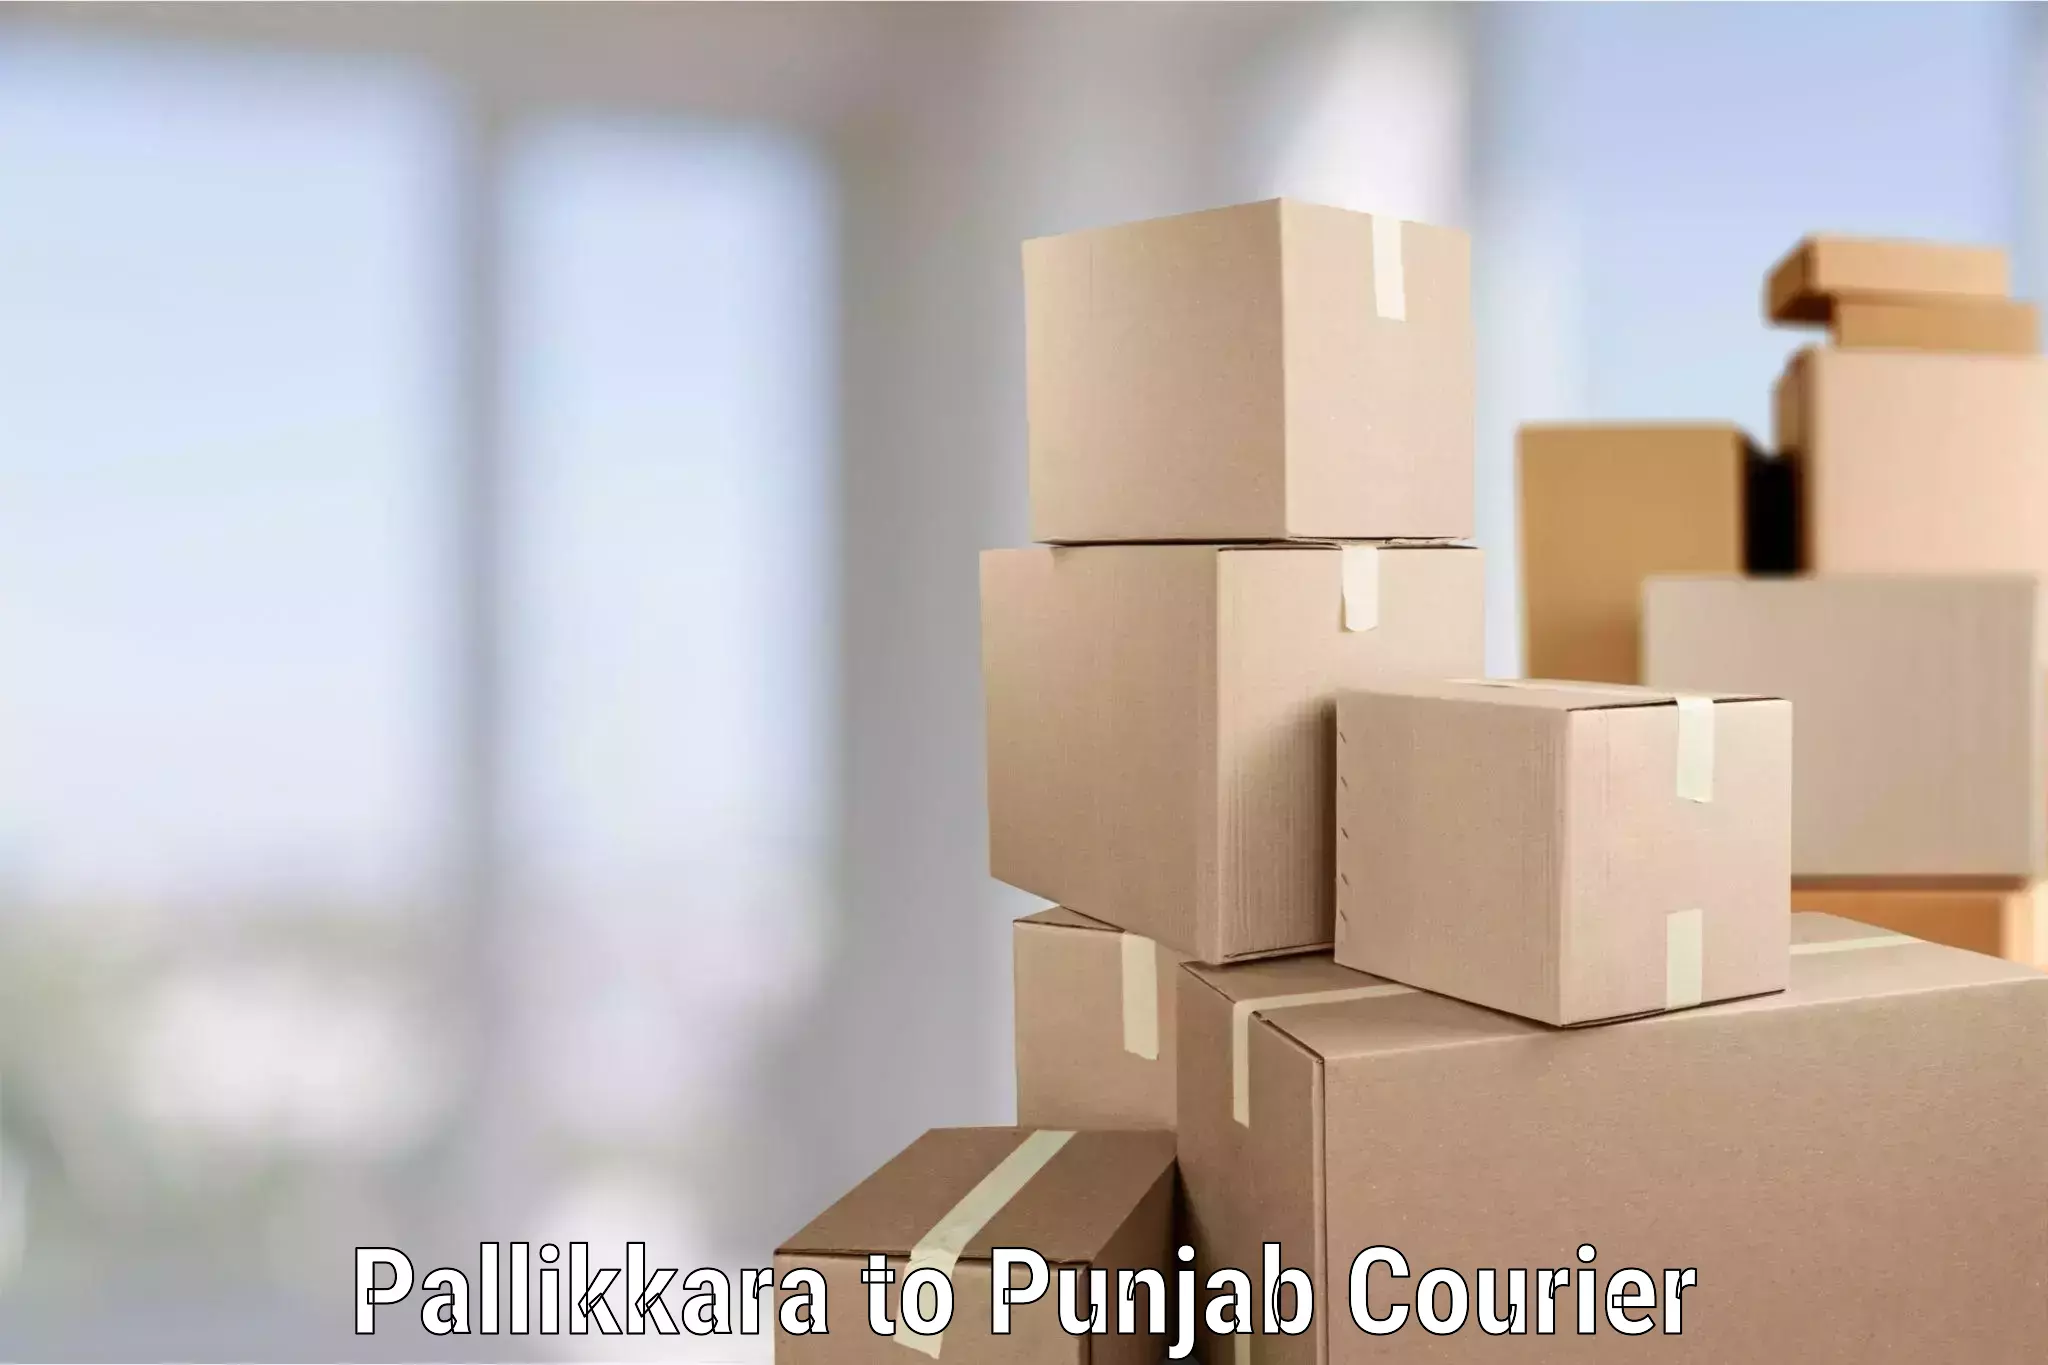 Furniture moving experts Pallikkara to Gurdaspur